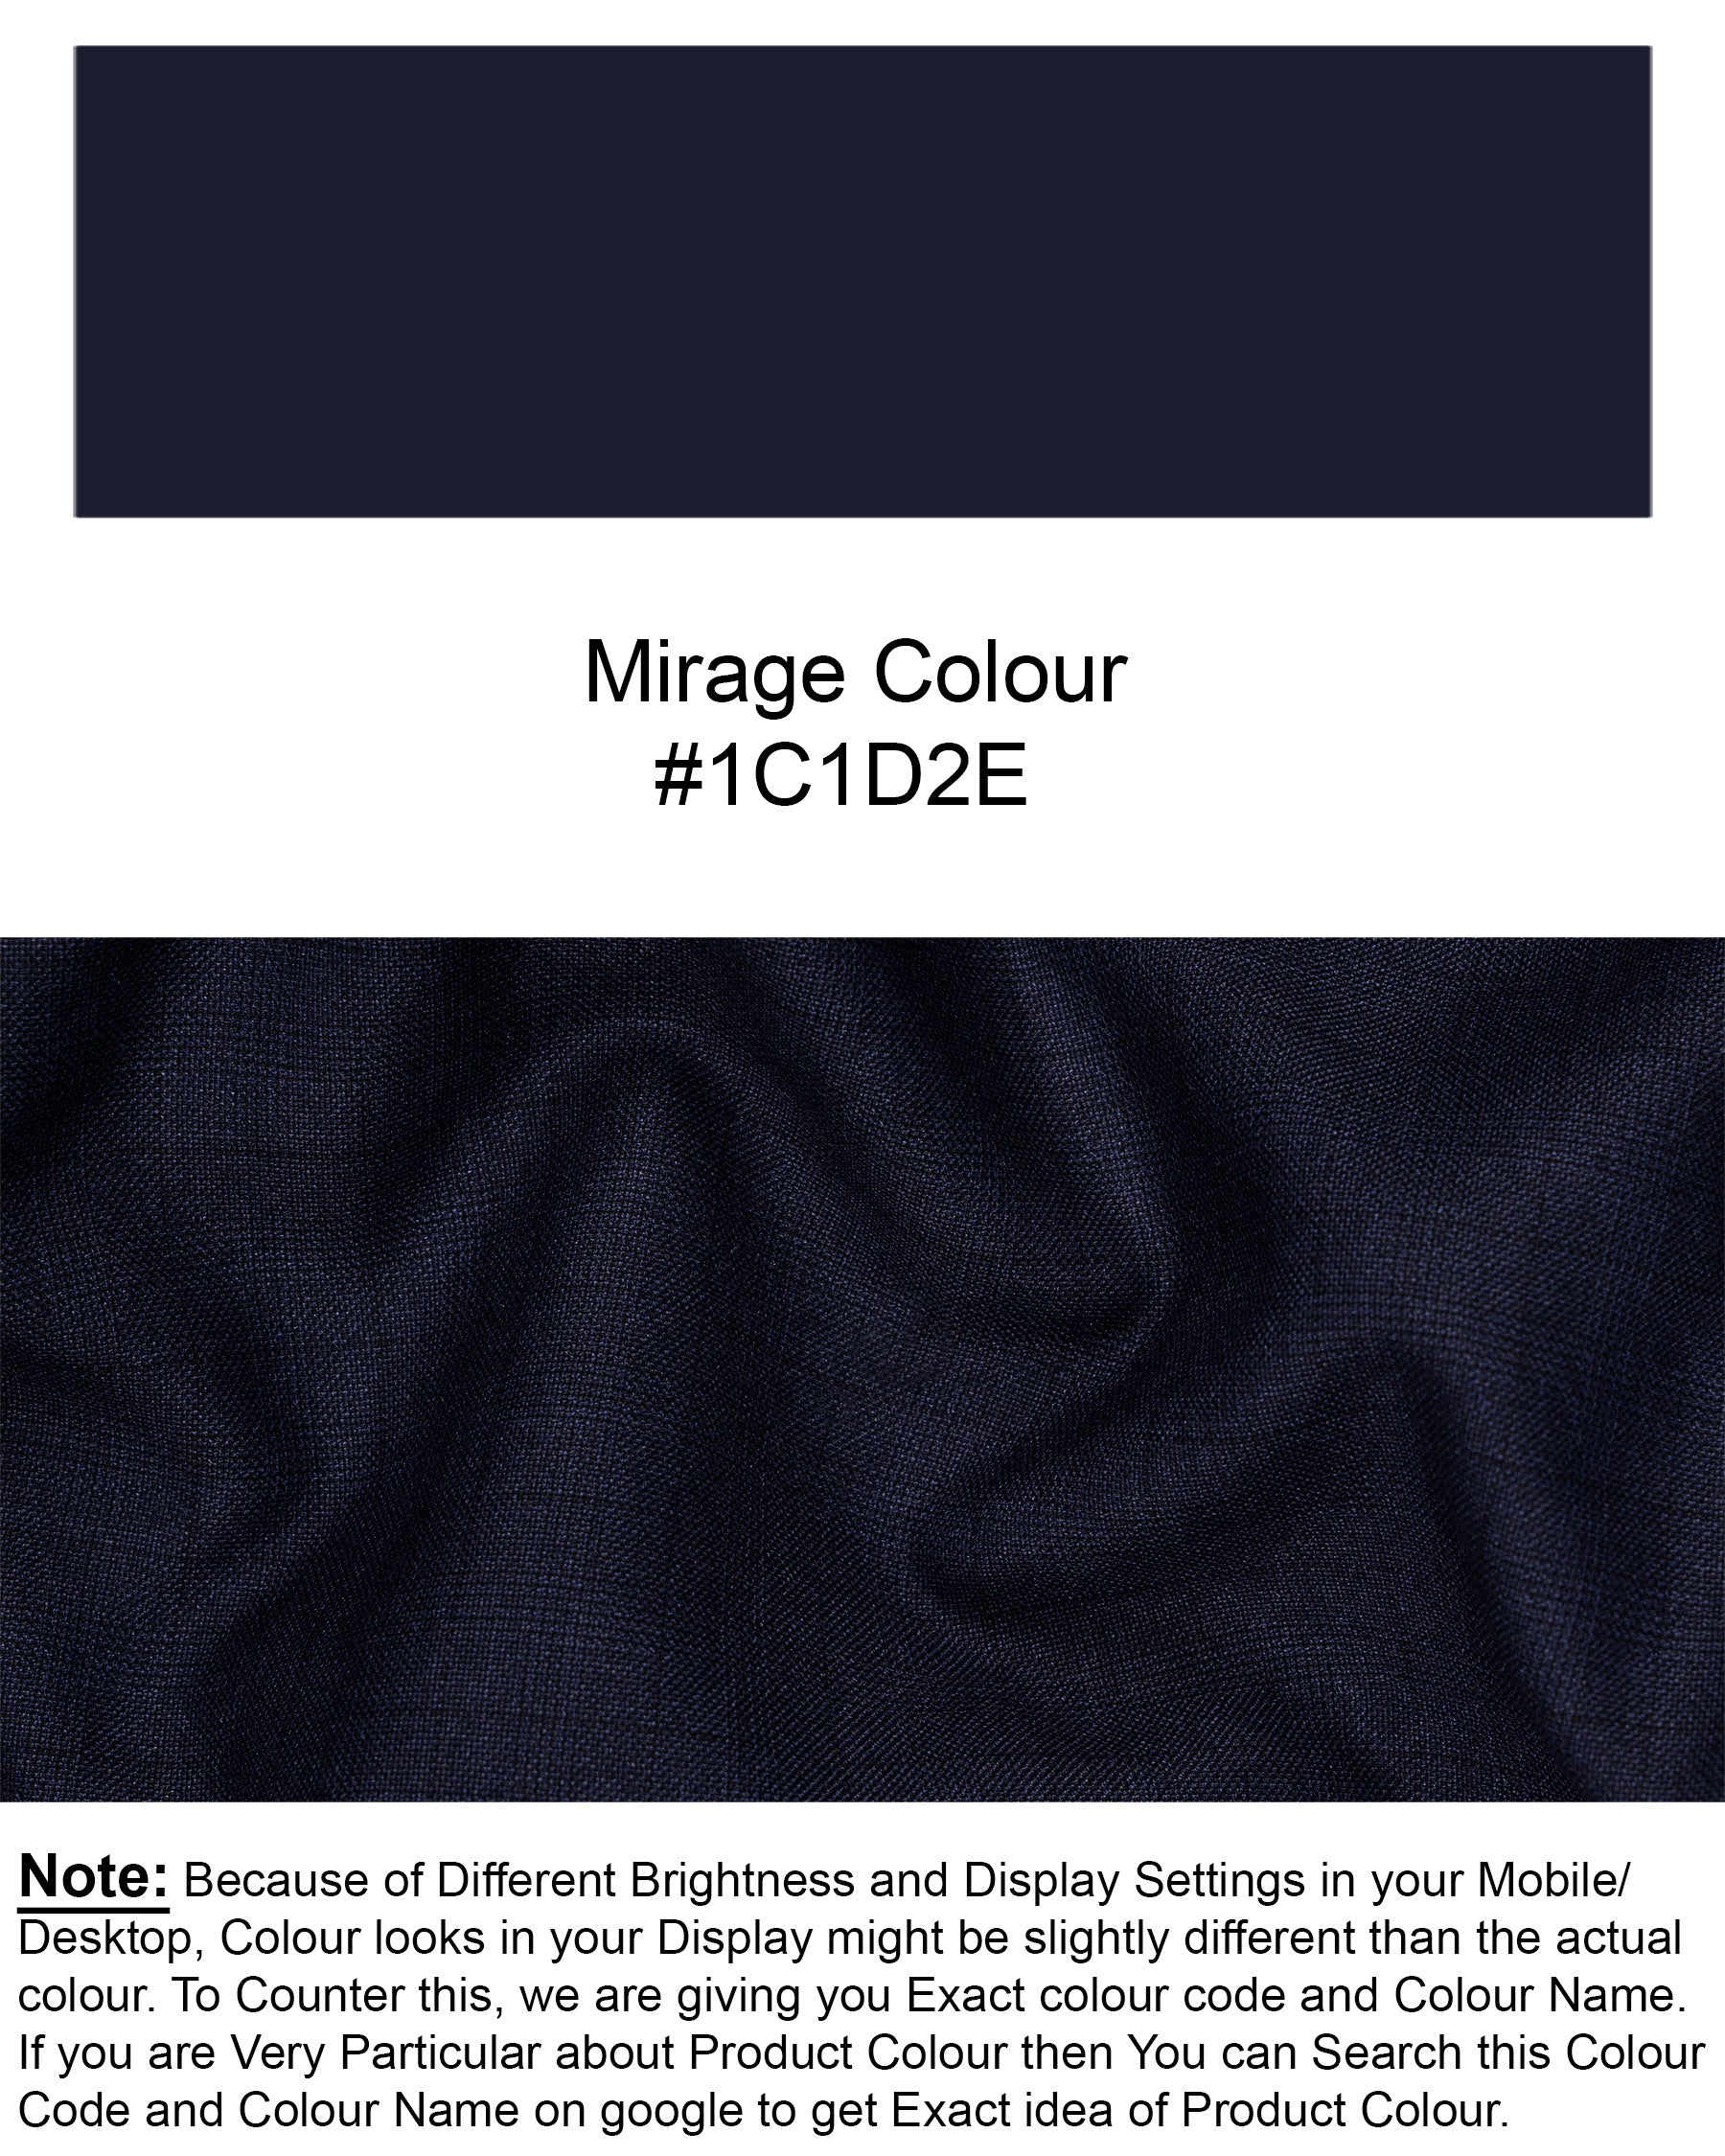 Mirage Blue Super fine Subtle Plaid Cross Buttoned Woolrich Bandgala Blazer BL1623-CBG2-36, BL1623-CBG2-38, BL1623-CBG2-40, BL1623-CBG2-42, BL1623-CBG2-44, BL1623-CBG2-46, BL1623-CBG2-48, BL1623-CBG2-50, BL1623-CBG2-52, BL1623-CBG2-54, BL1623-CBG2-56, BL1623-CBG2-58, BL1623-CBG2-60